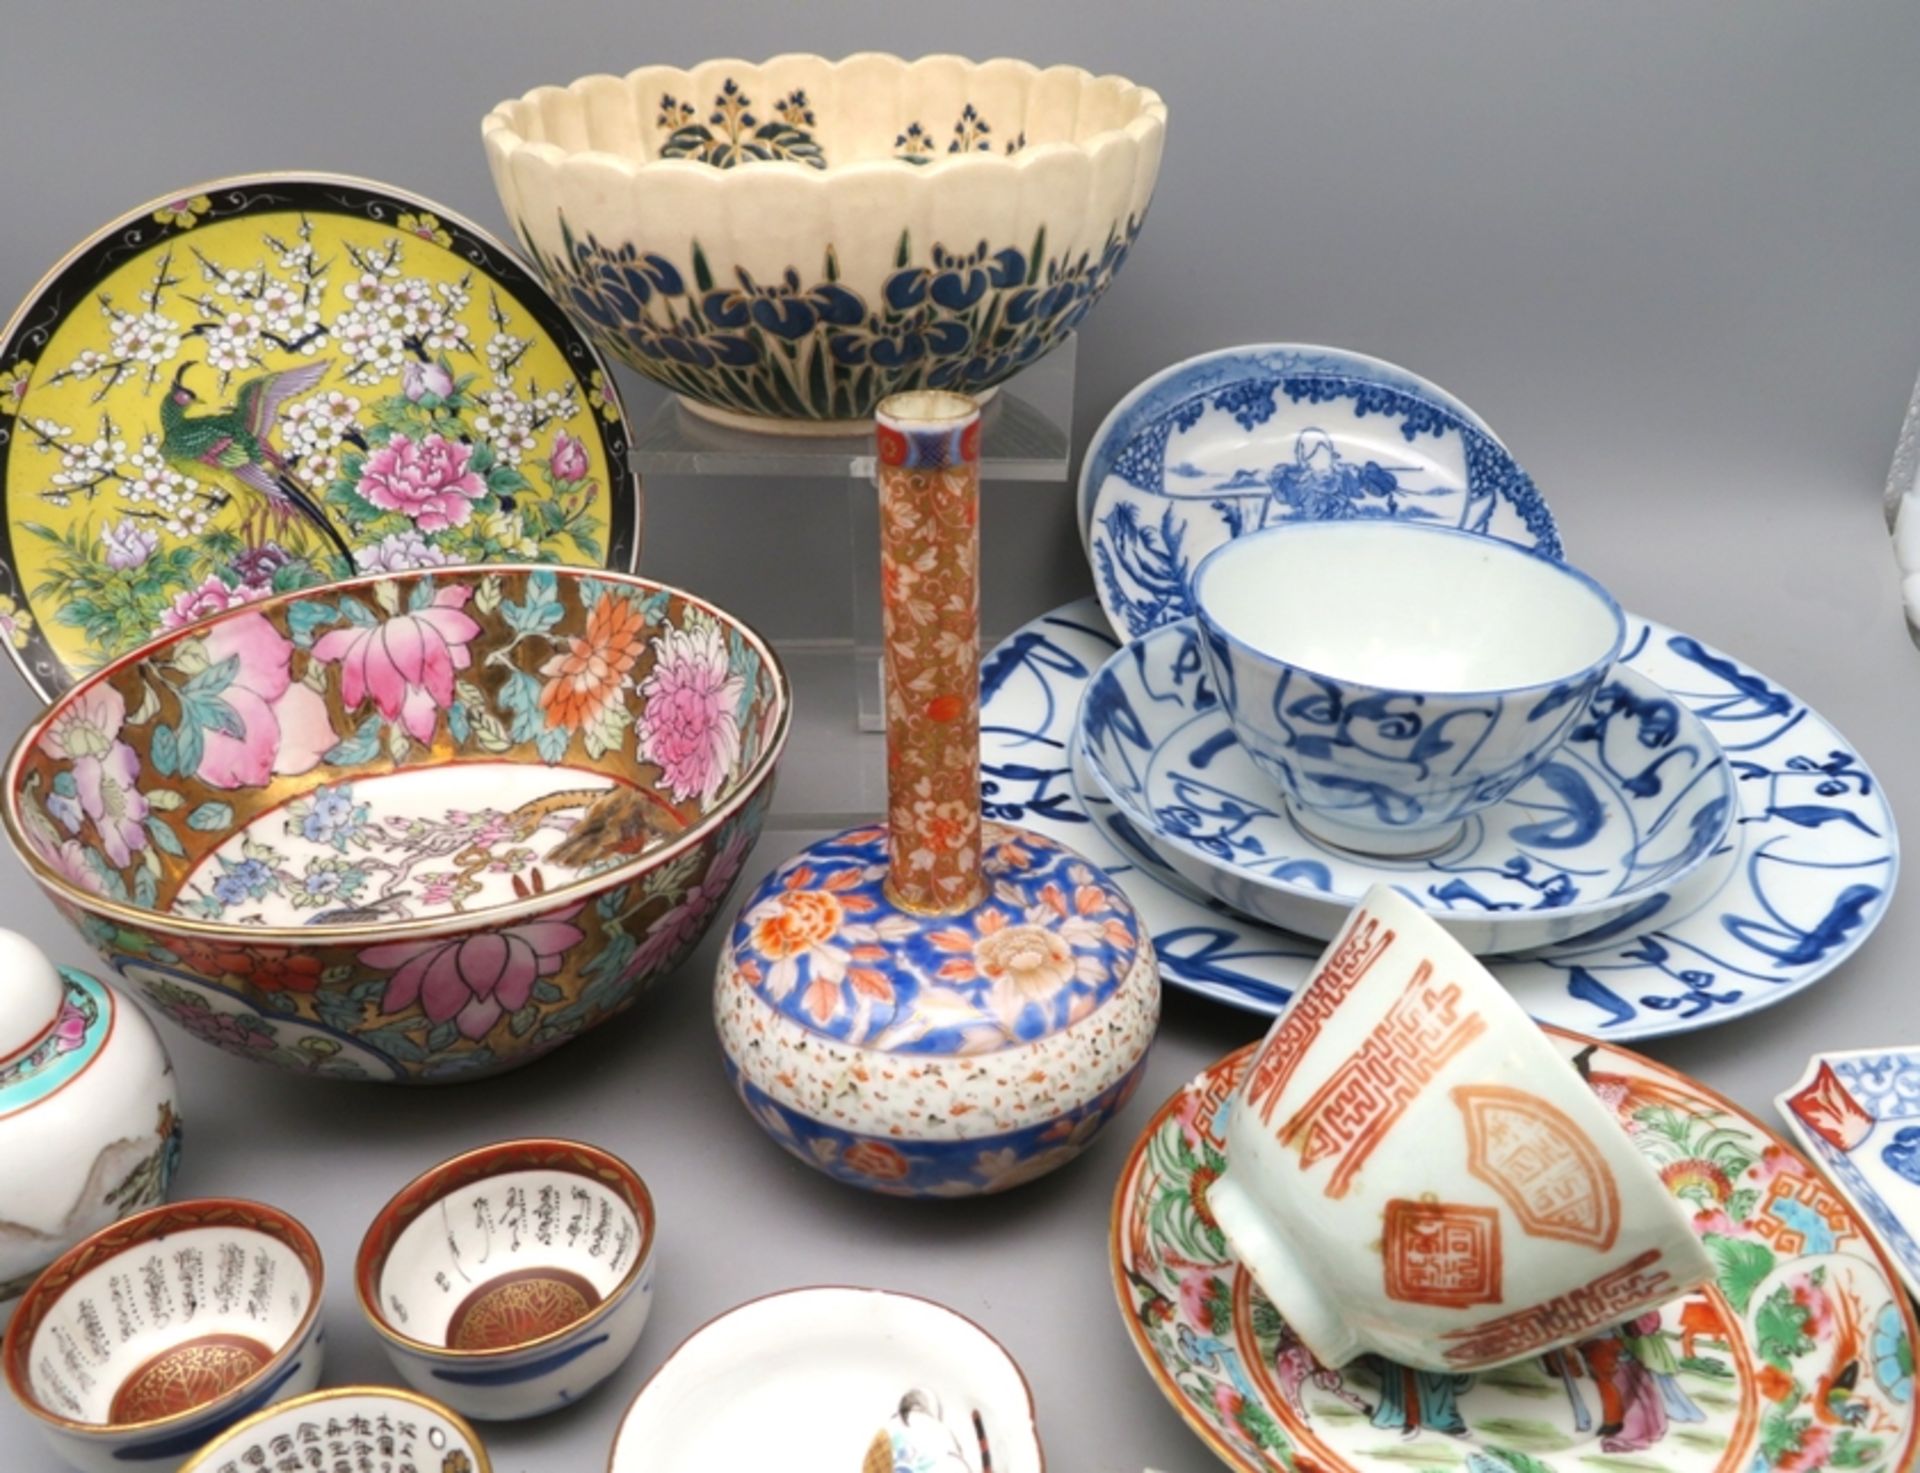 21 teiliges Konvolut diverser Porzellan-Objekte, China und Japan. - Bild 2 aus 3